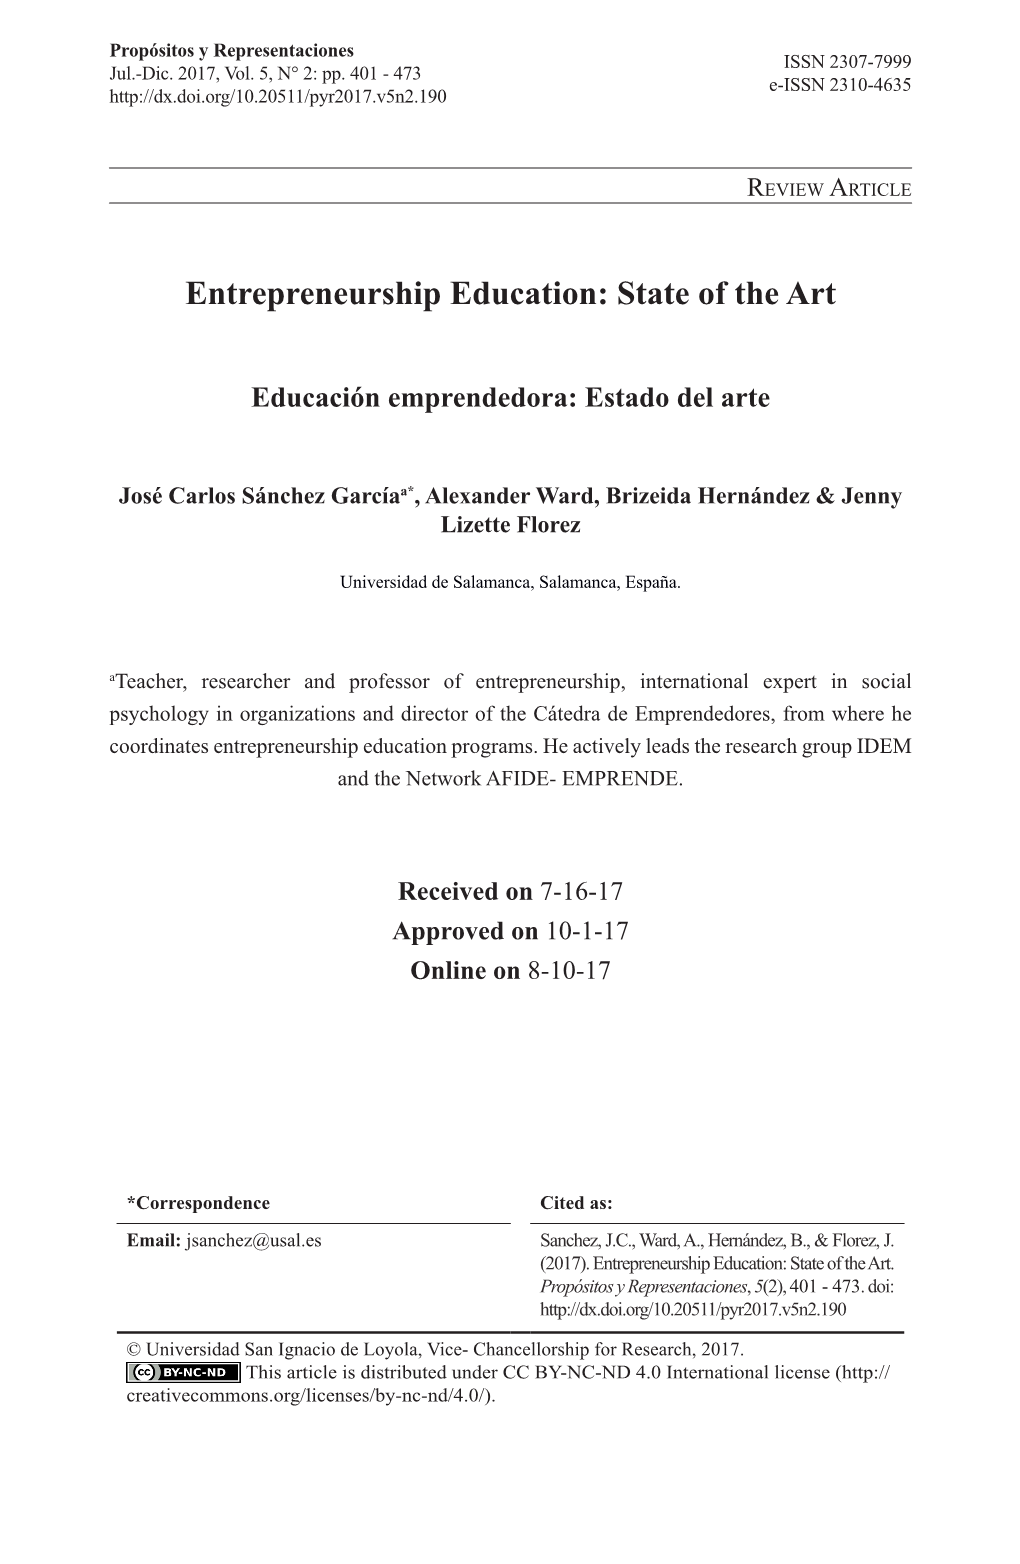 Entrepreneurship Education: State of the Art